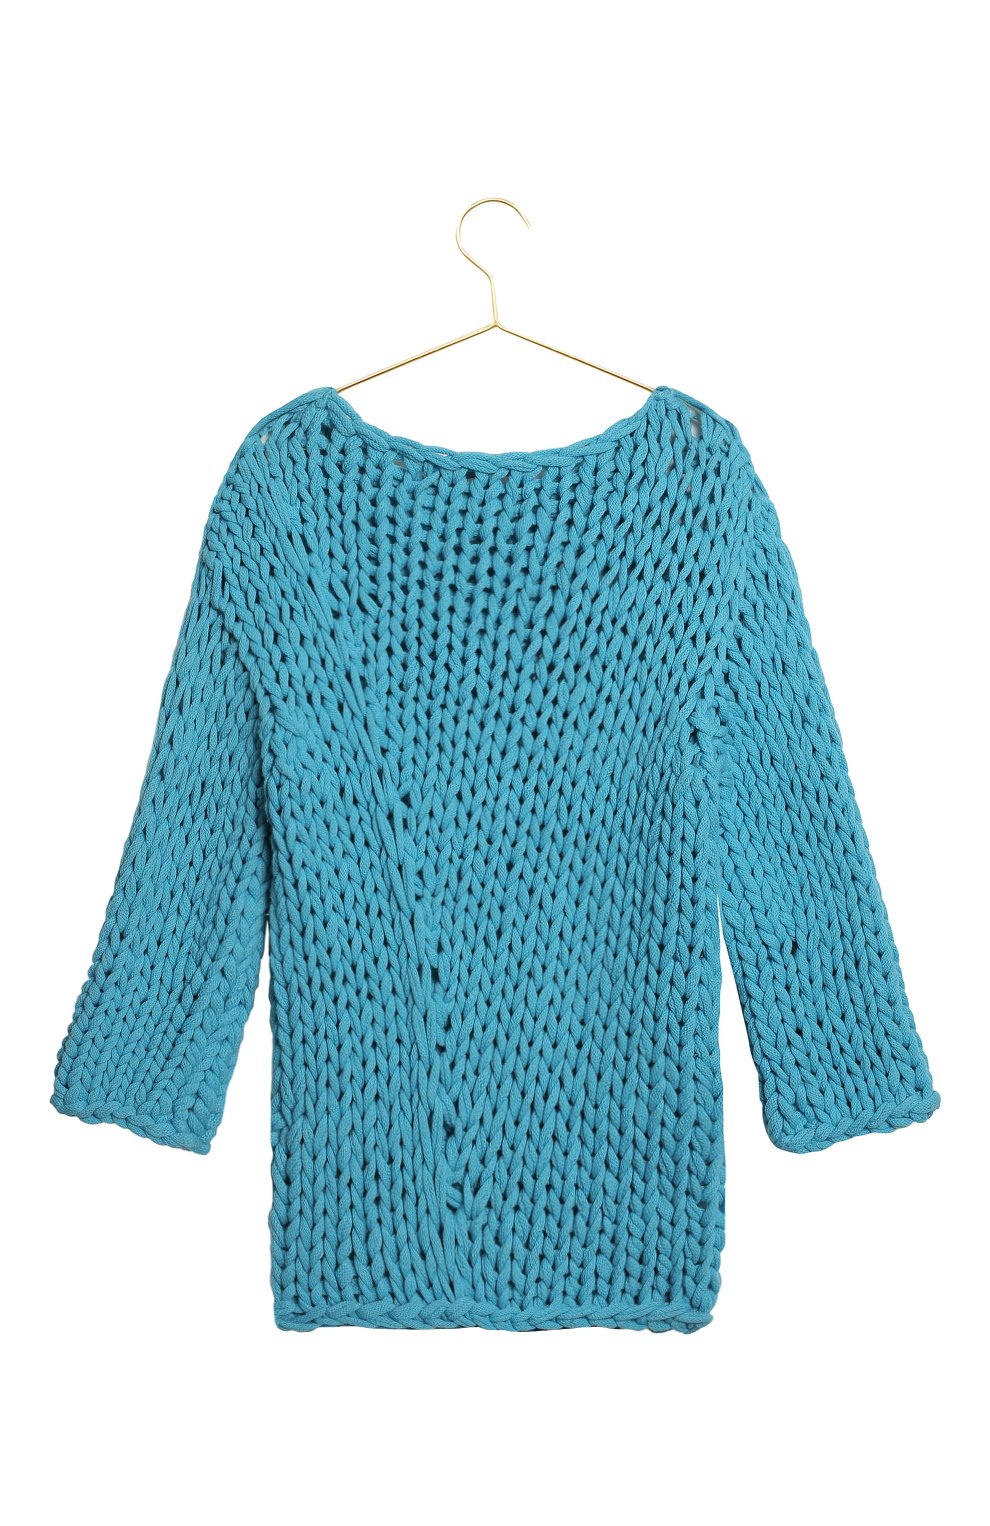 Кашемировый свитер | Iris Von Arnim | Голубой - 2